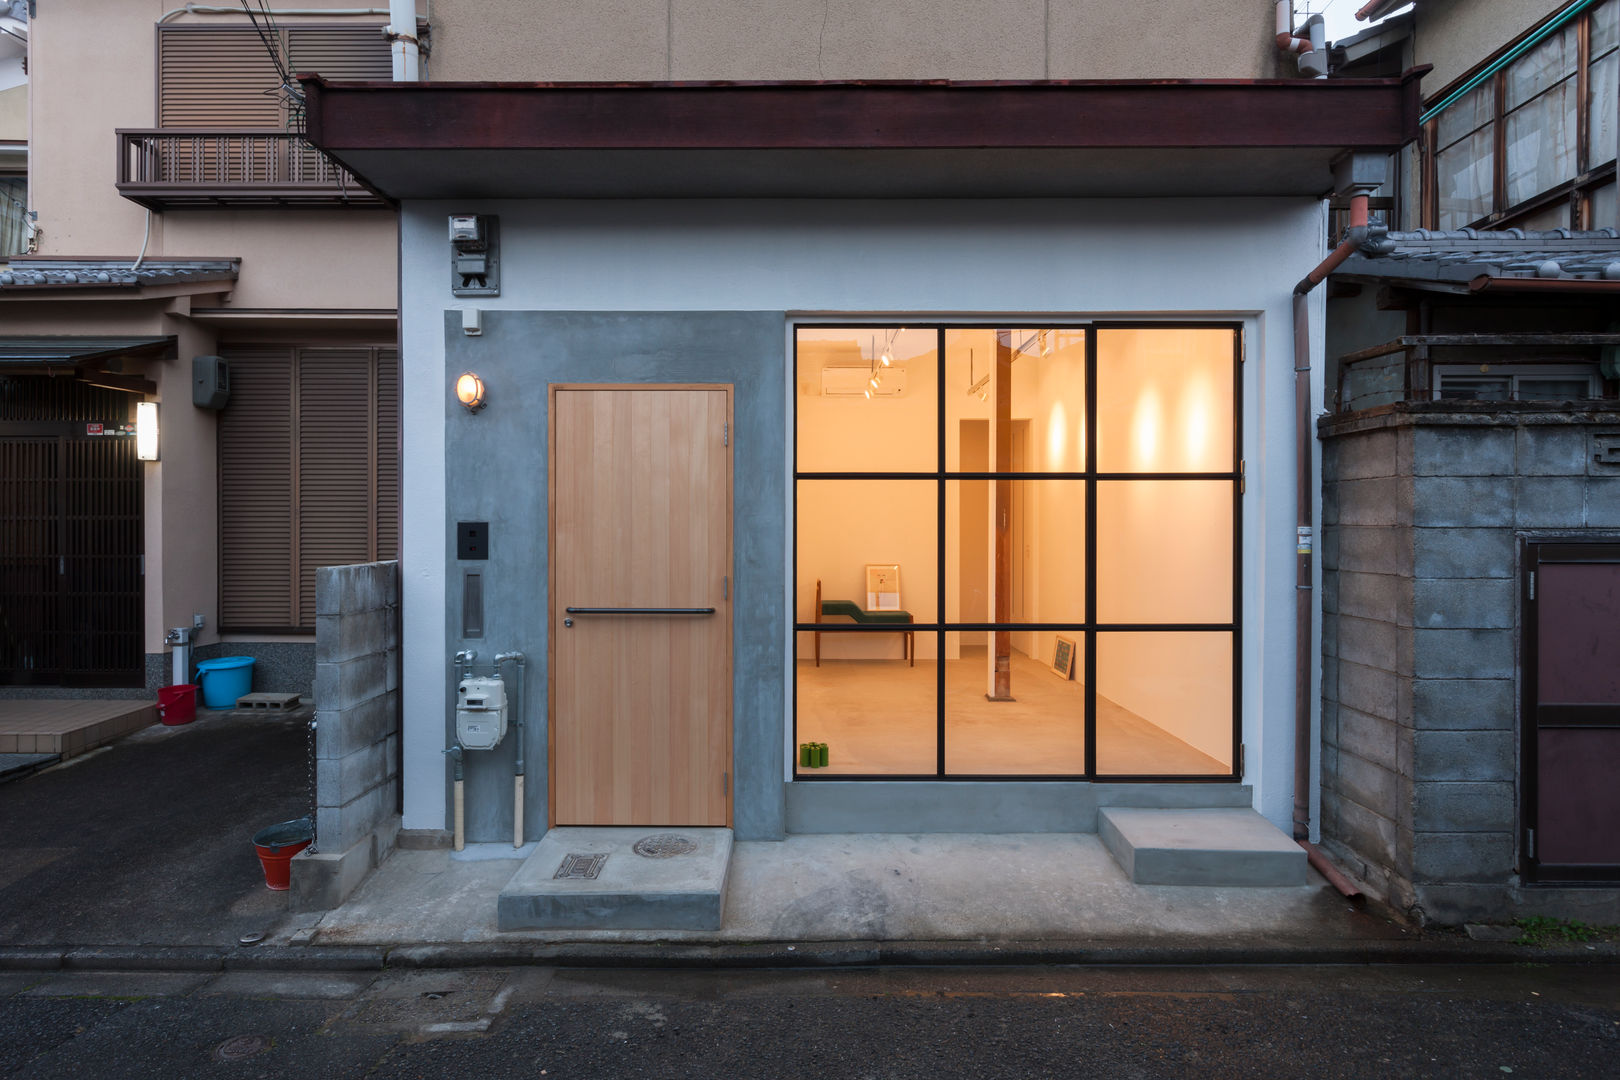 House in Shichiku, SHIMPEI ODA ARCHITECT’S OFFICE SHIMPEI ODA ARCHITECT’S OFFICE Interior design